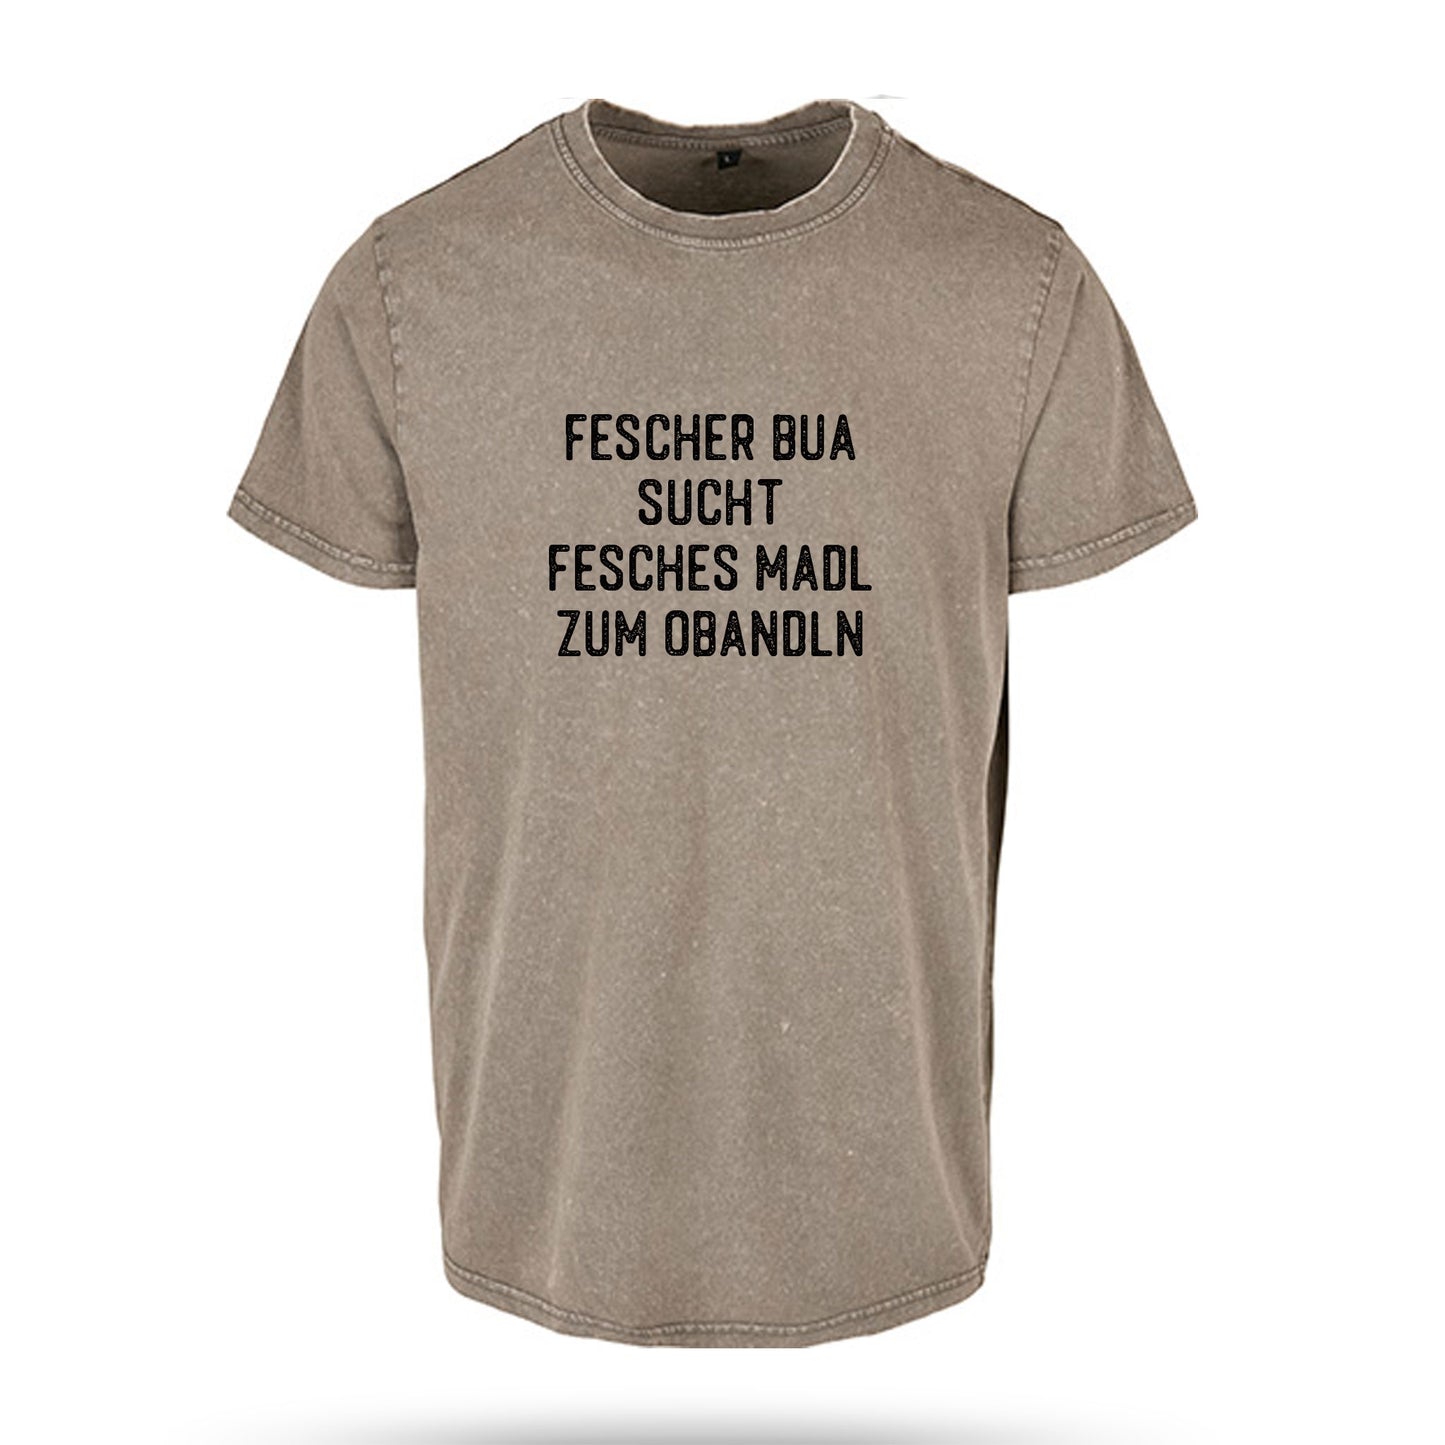 KIRCHTAG T-Shirt Fescher Bua sucht fesches Madl zum Obandln